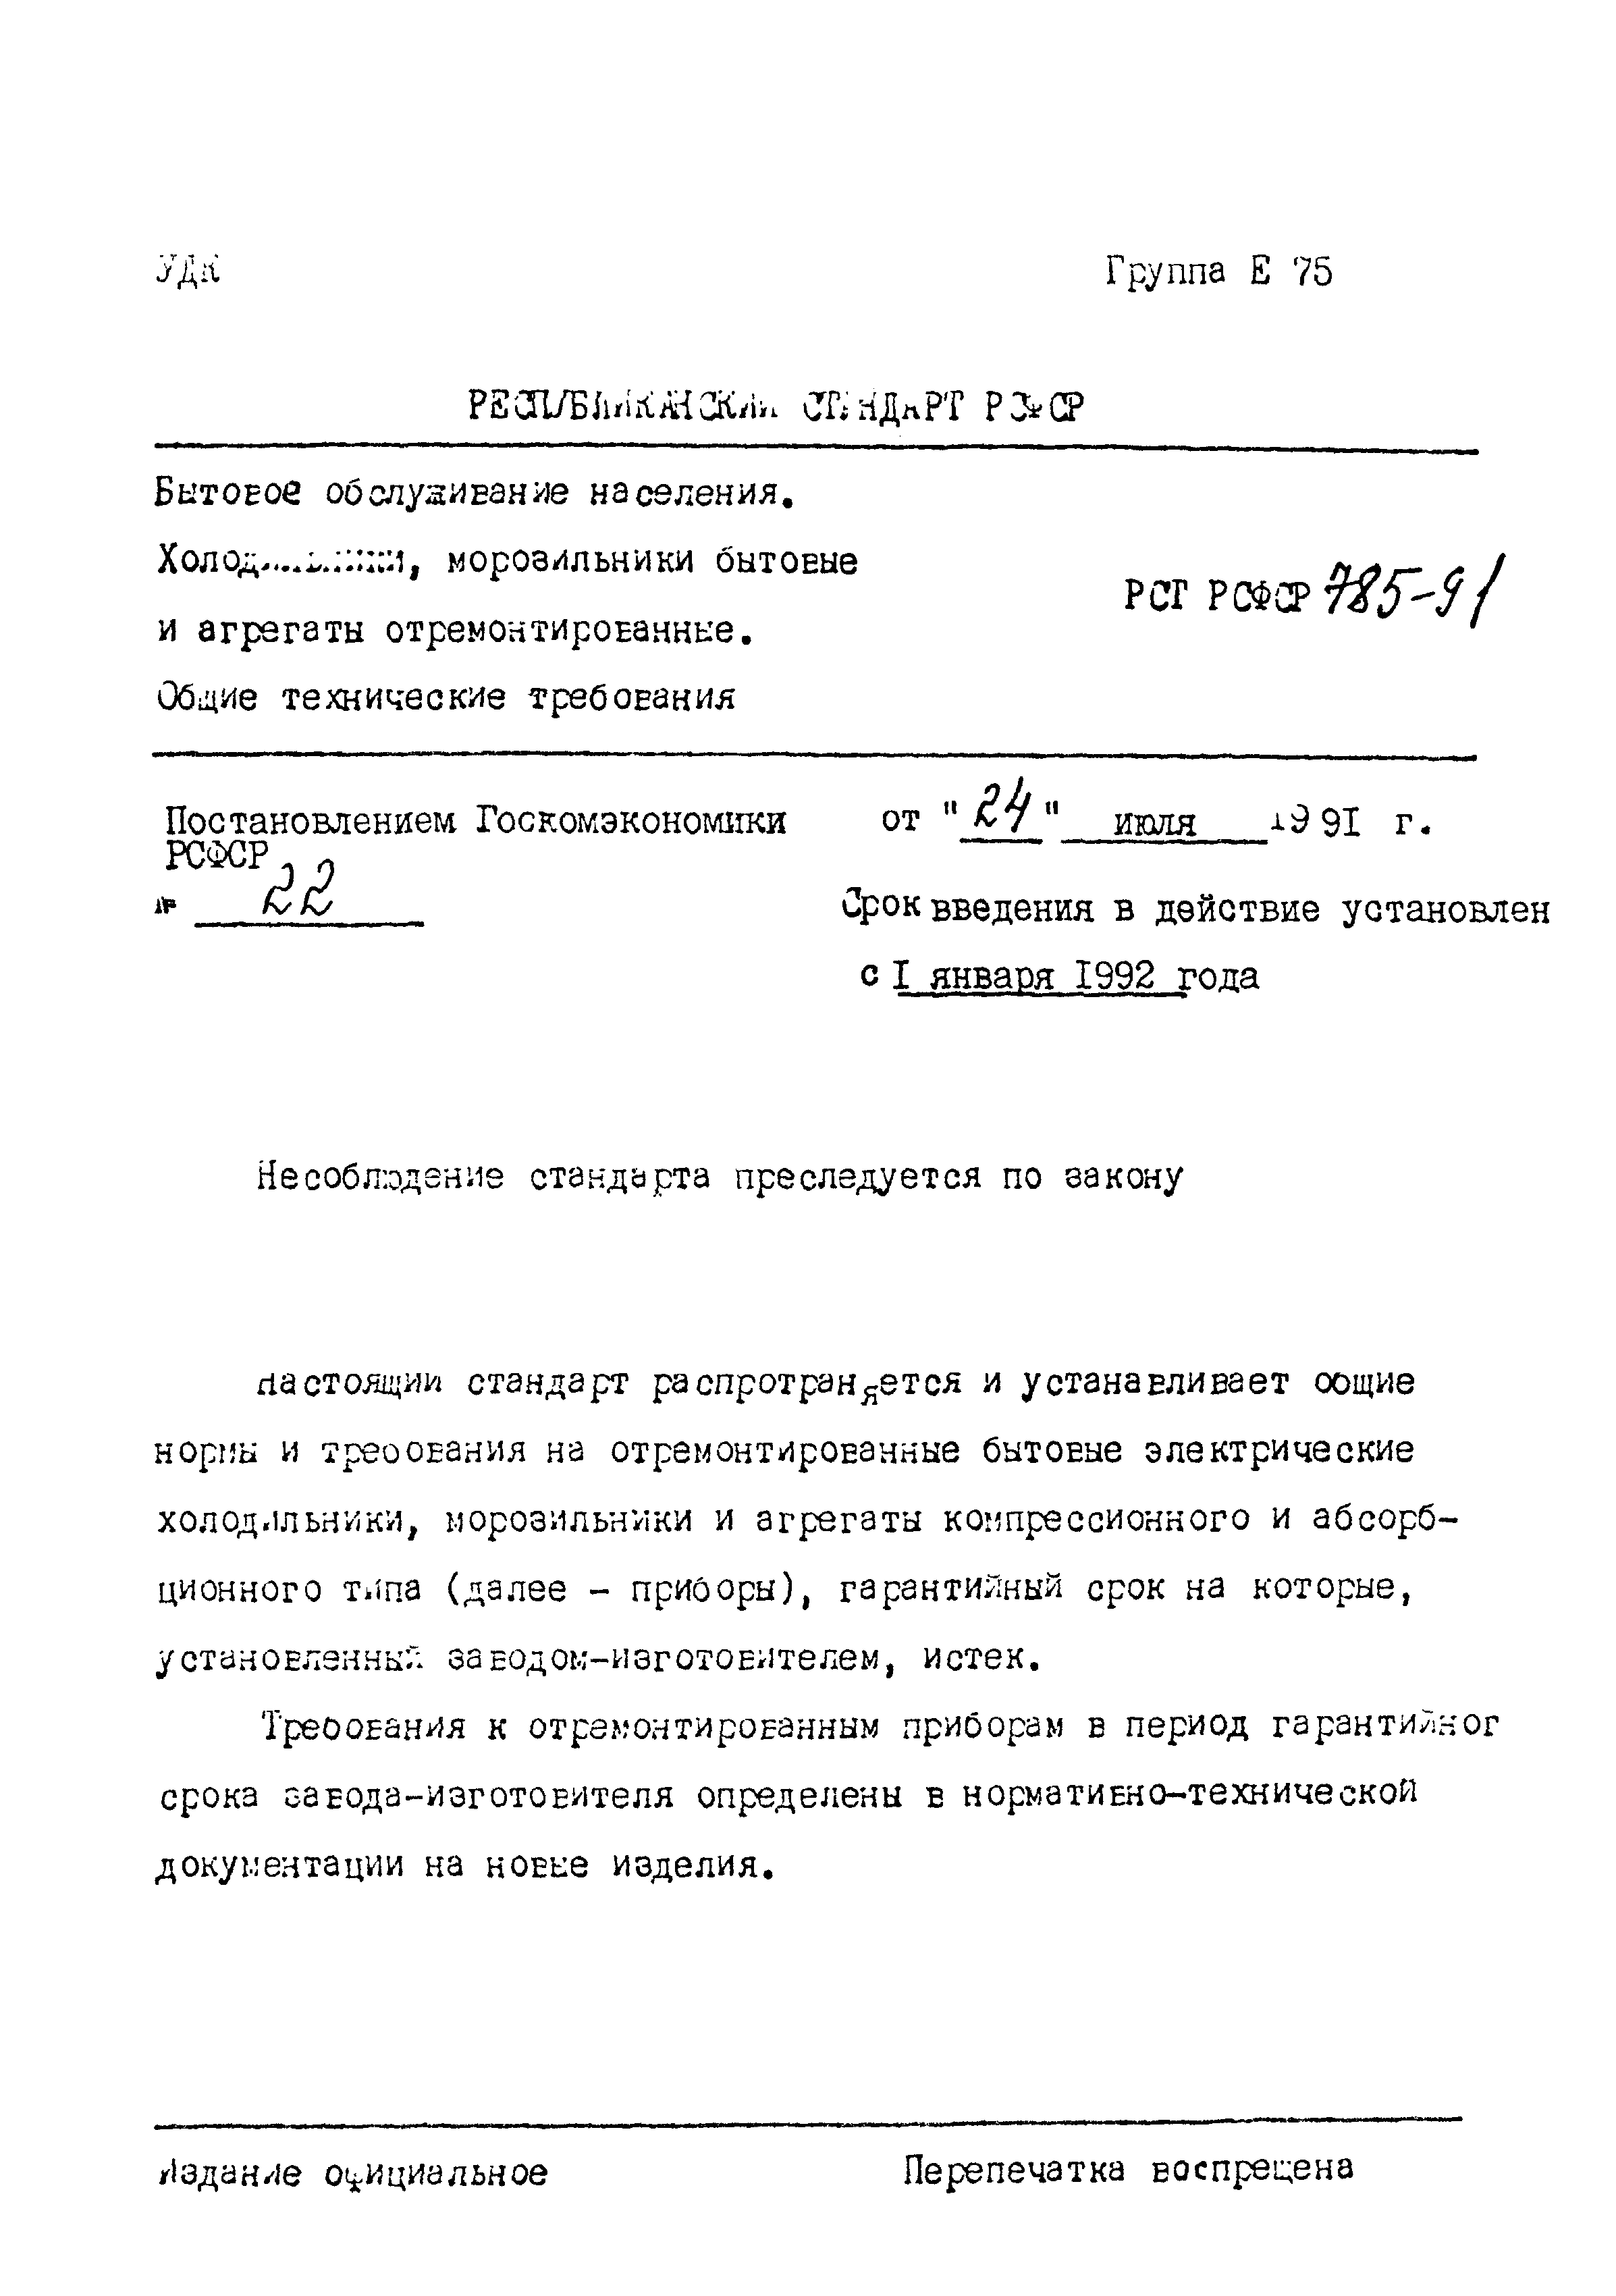 РСТ РСФСР 785-91